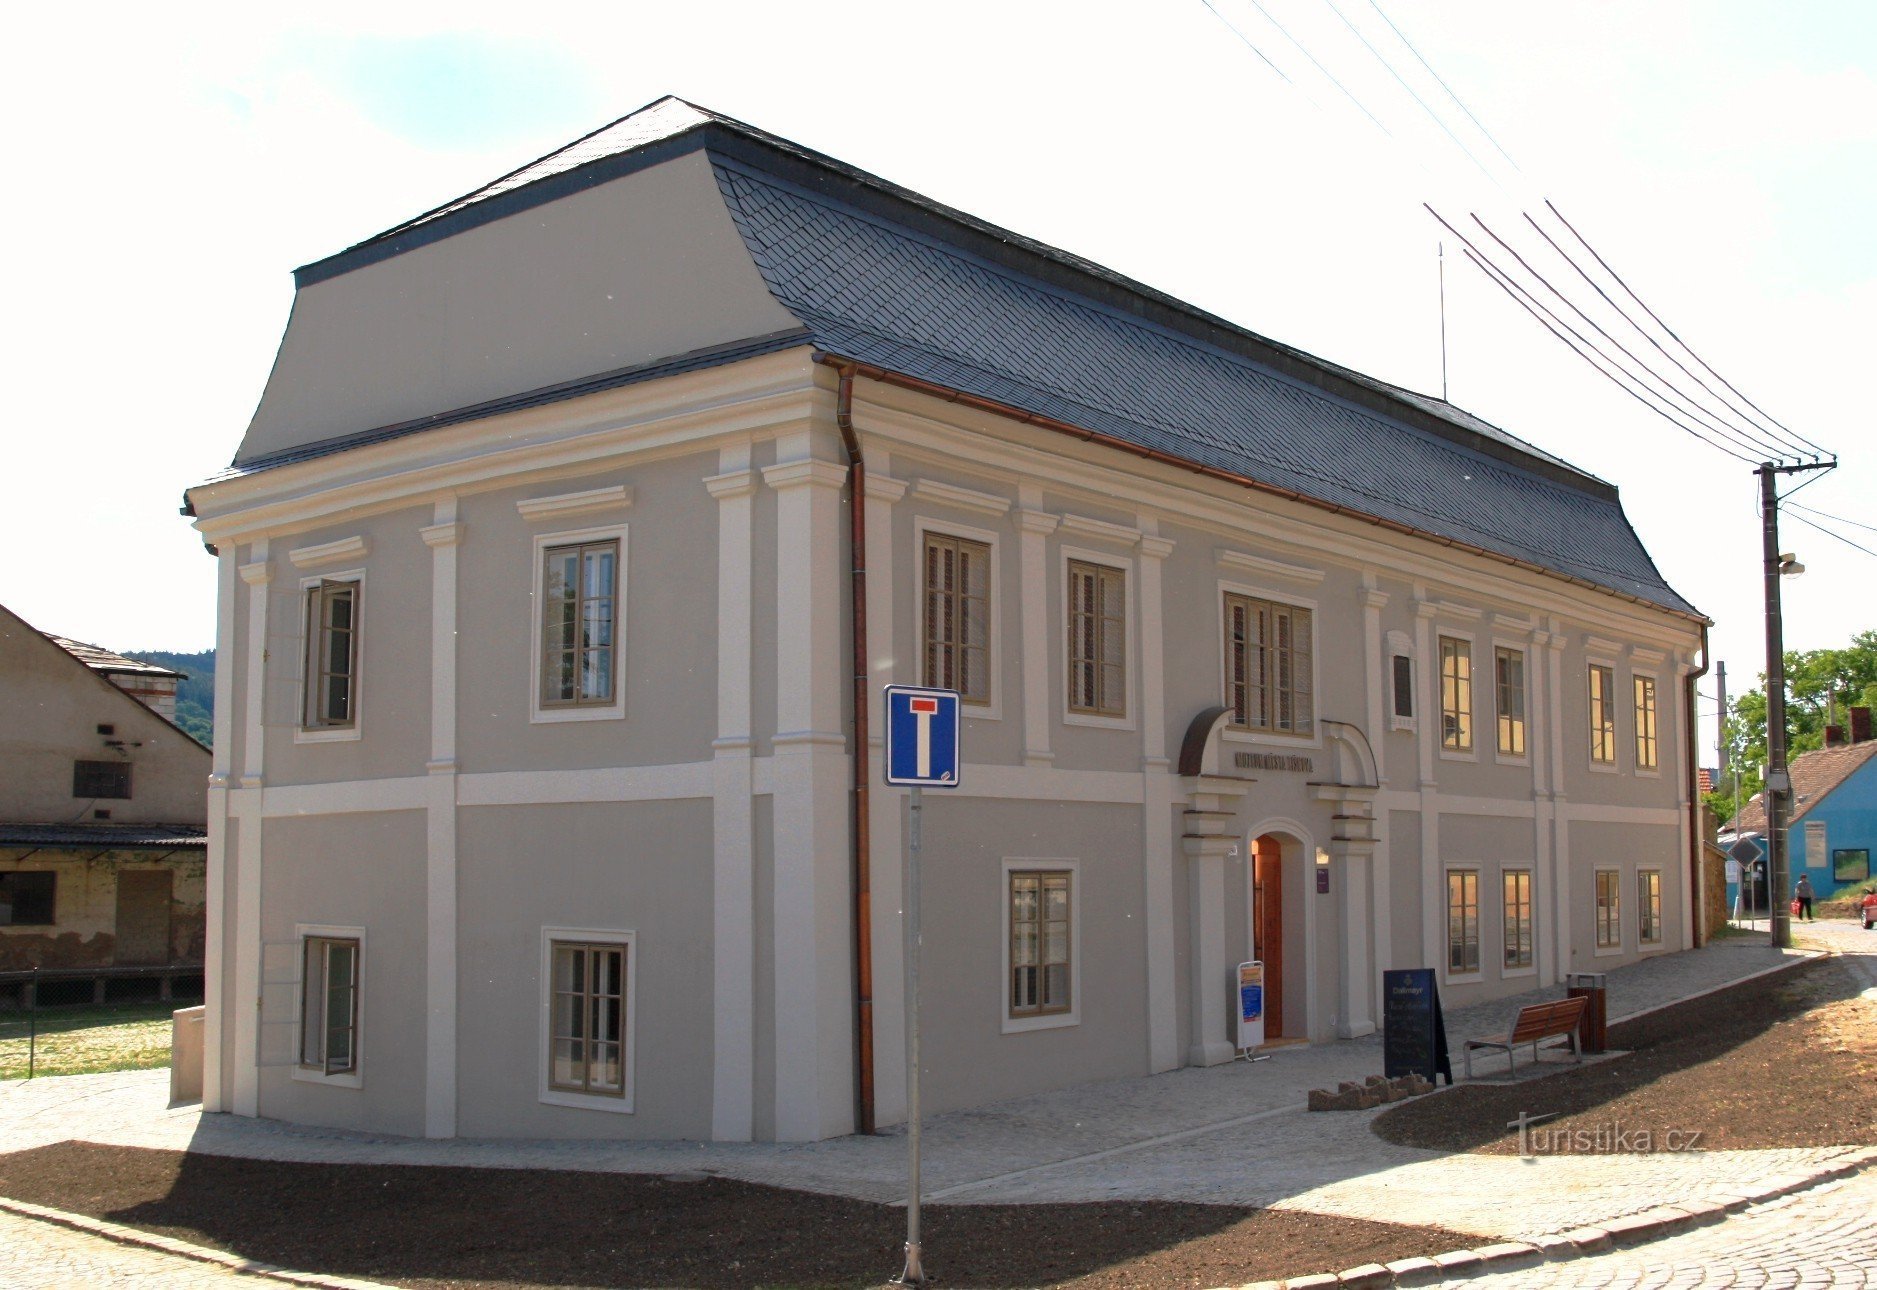 Tišnov - Müller's house